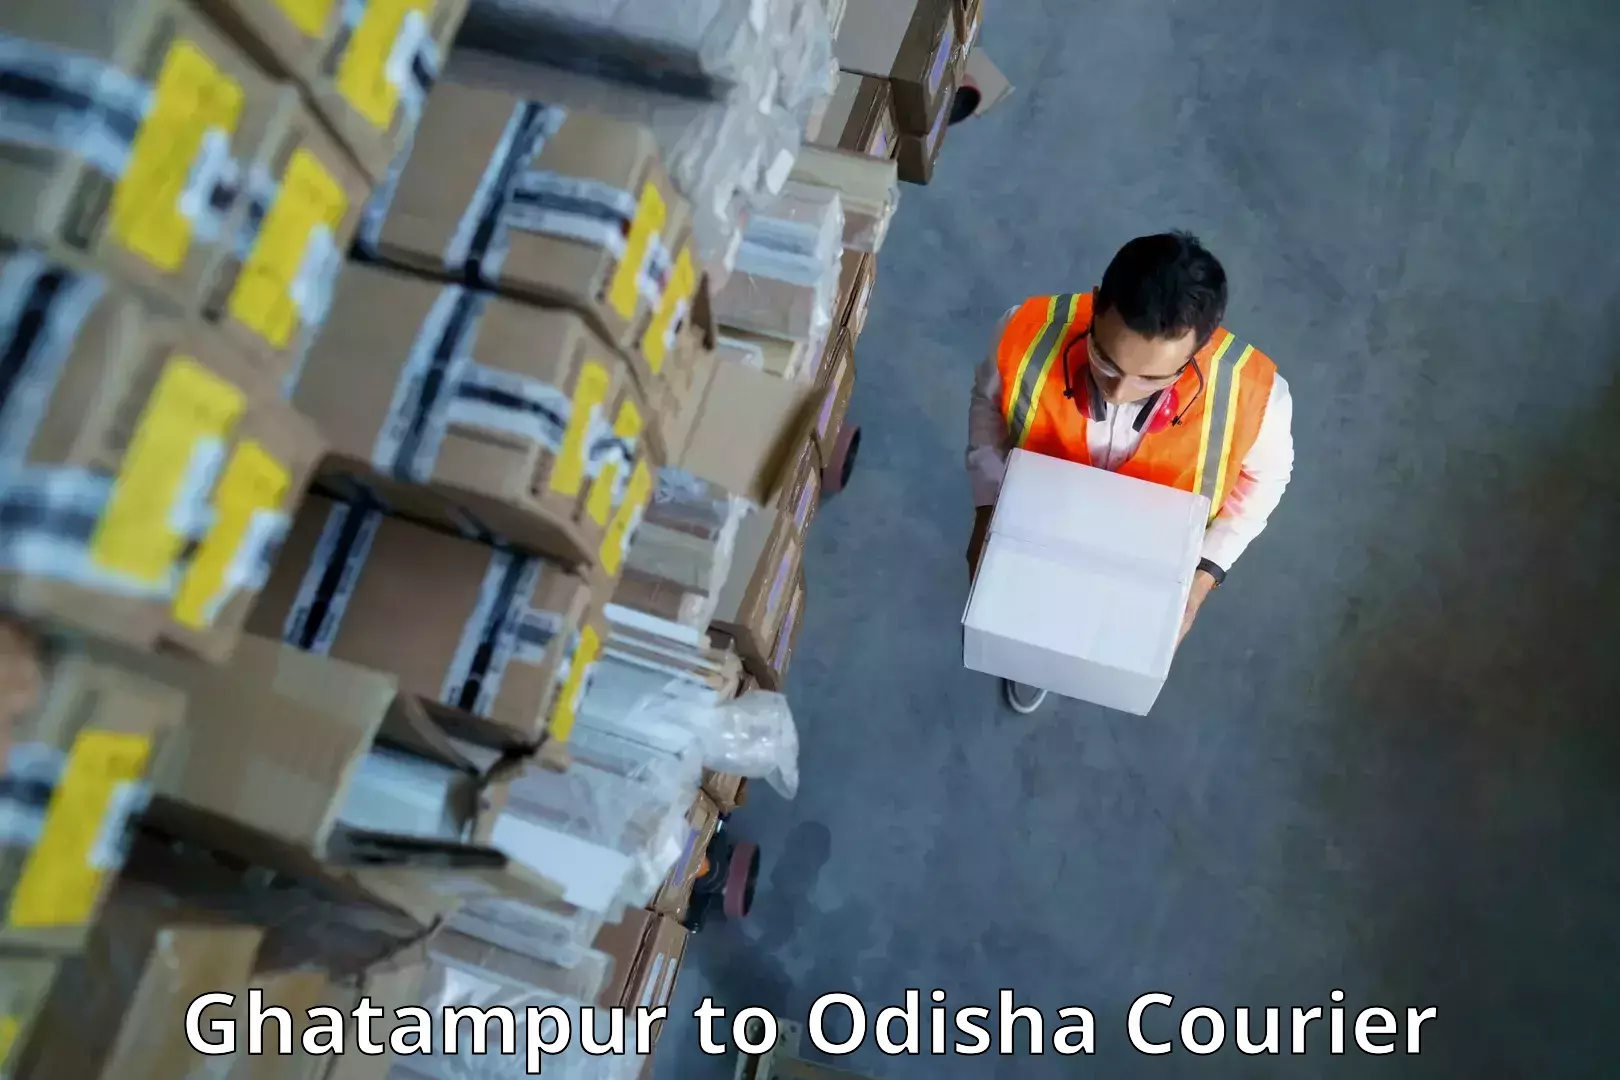 Customer-focused courier Ghatampur to Sankerko